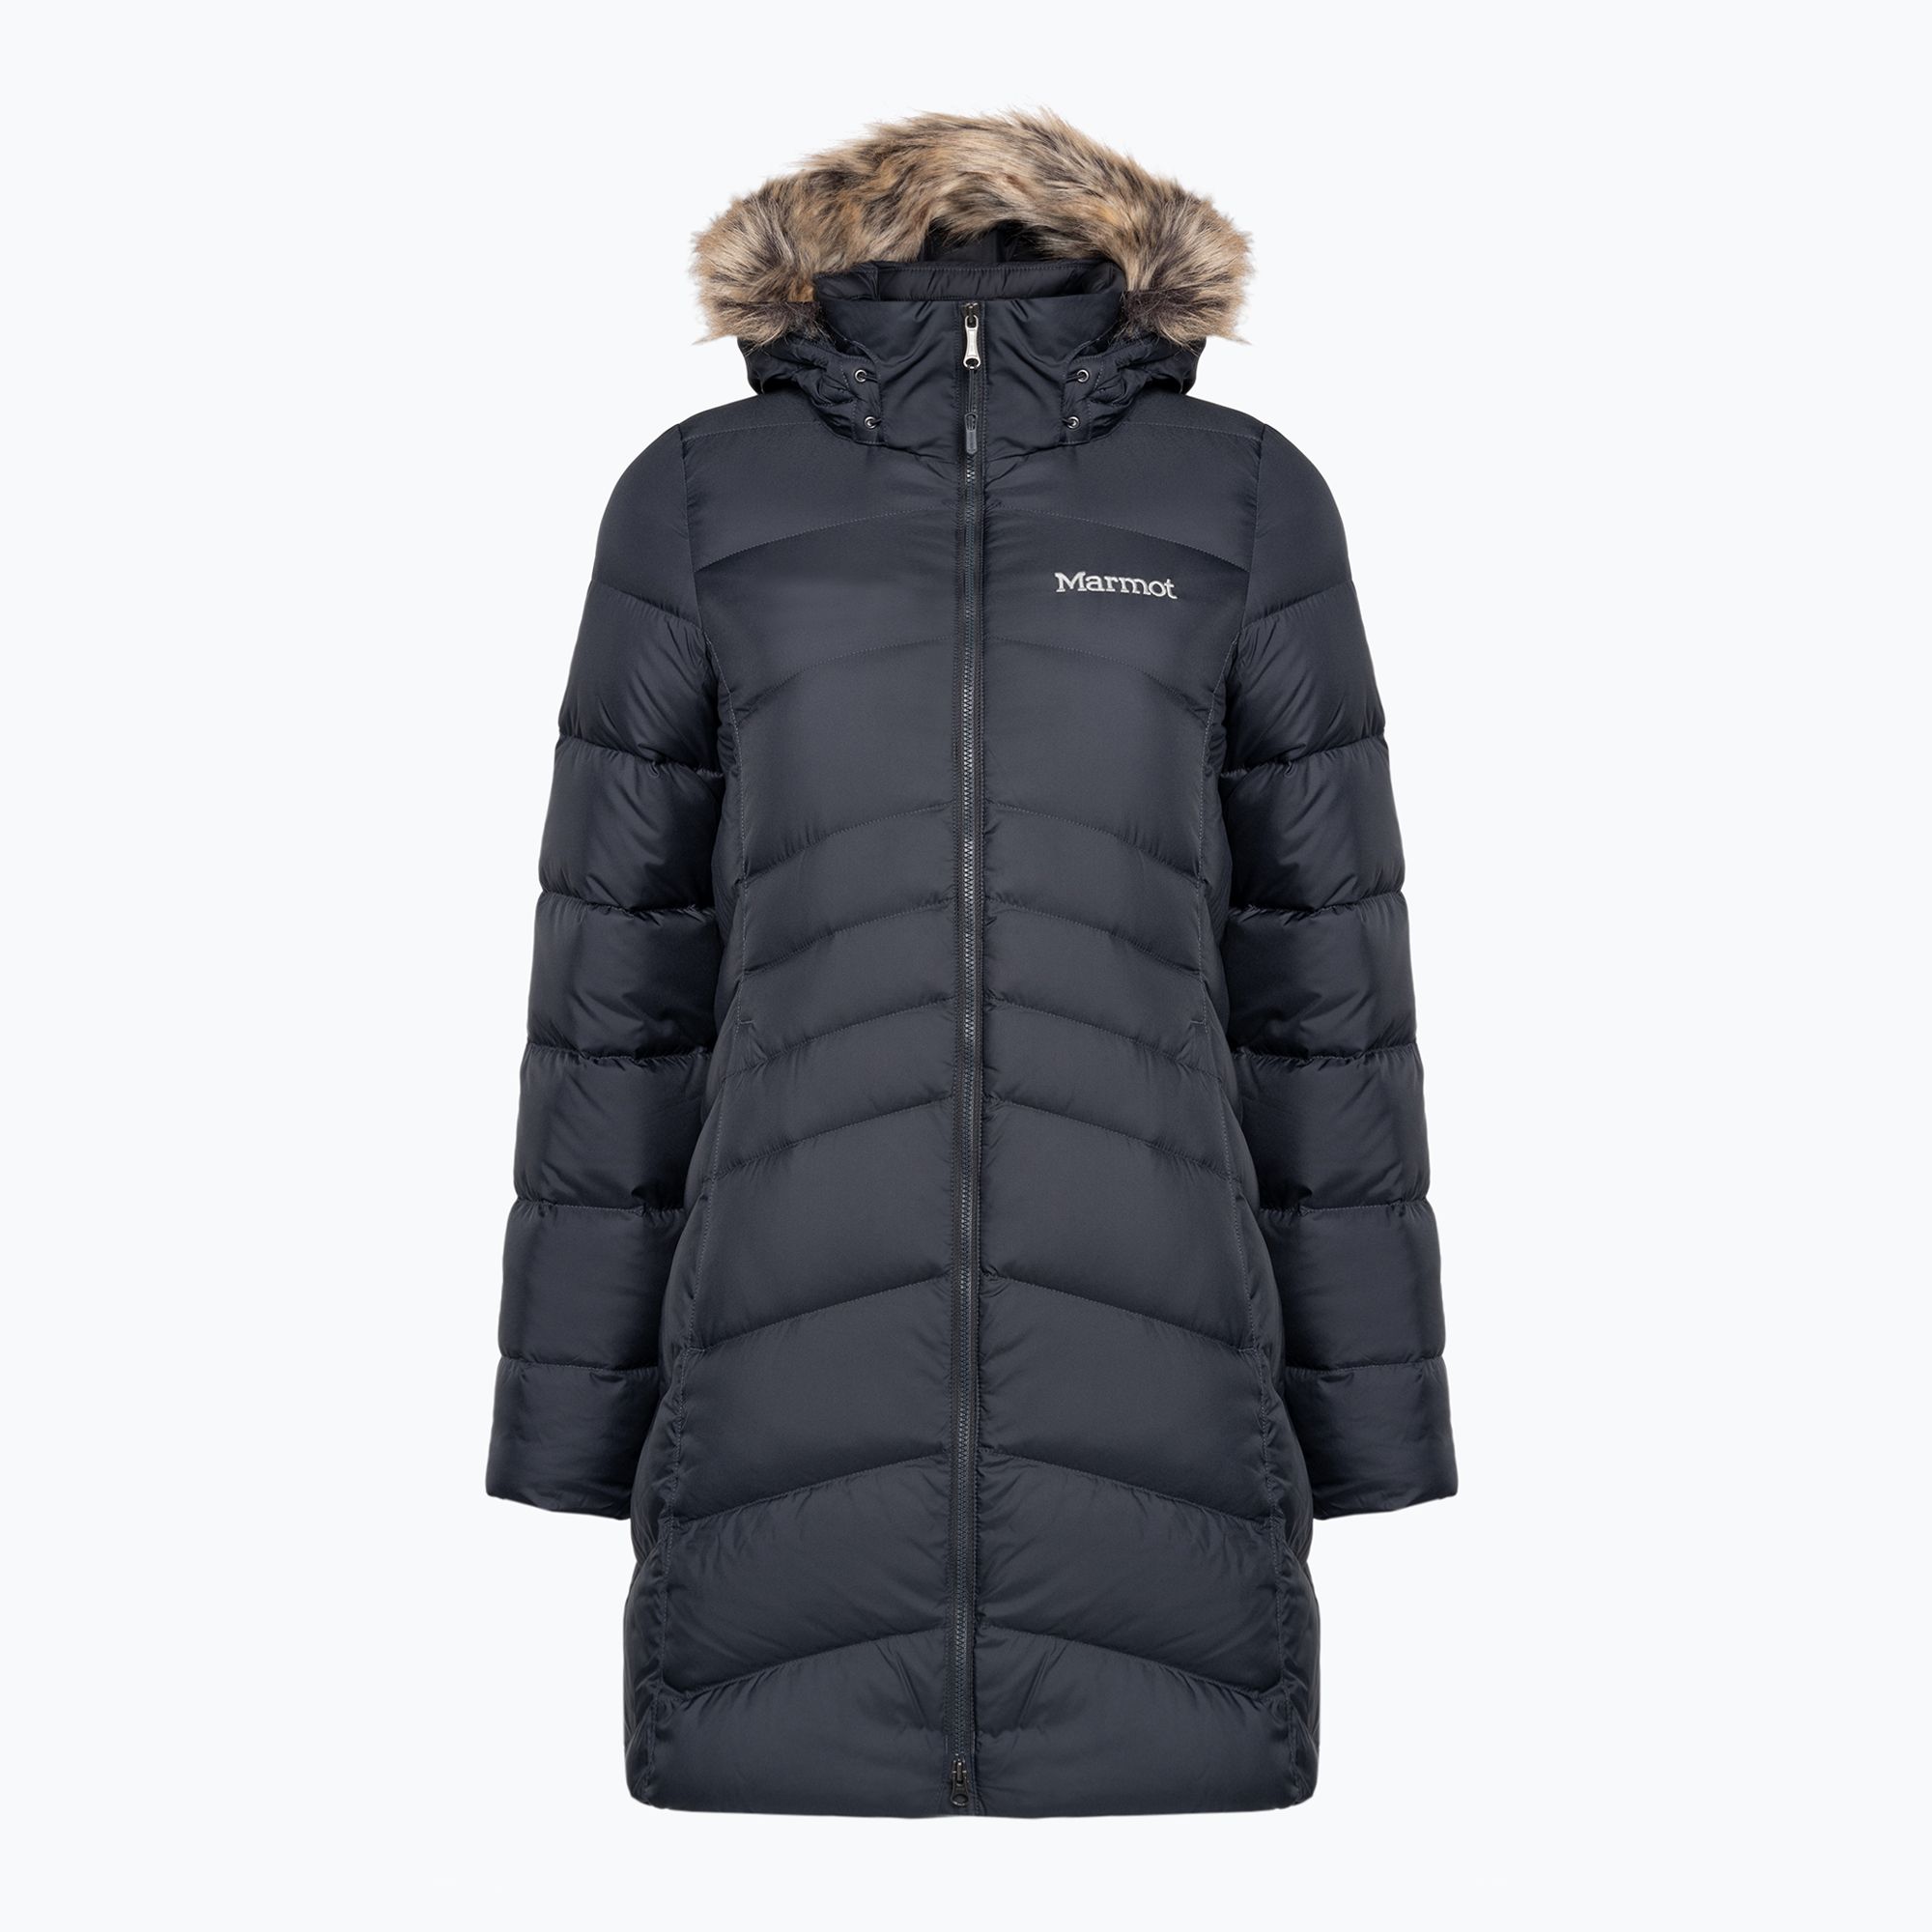 Płaszcz puchowy damski Marmot Montreal Coat dark steel